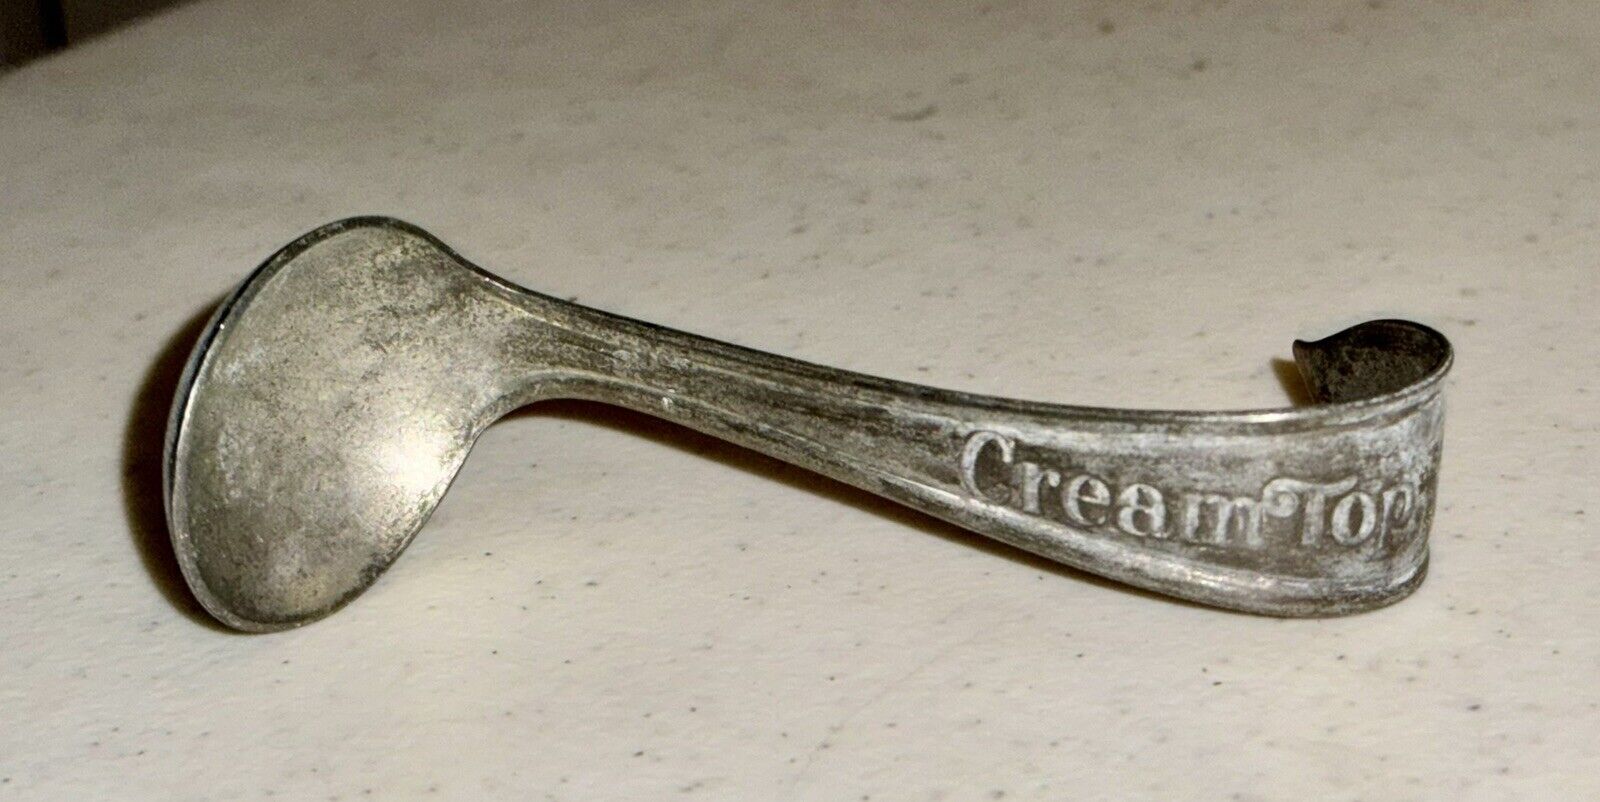 Vintage Metal Cream Top Dairy Spoon Curved Handle